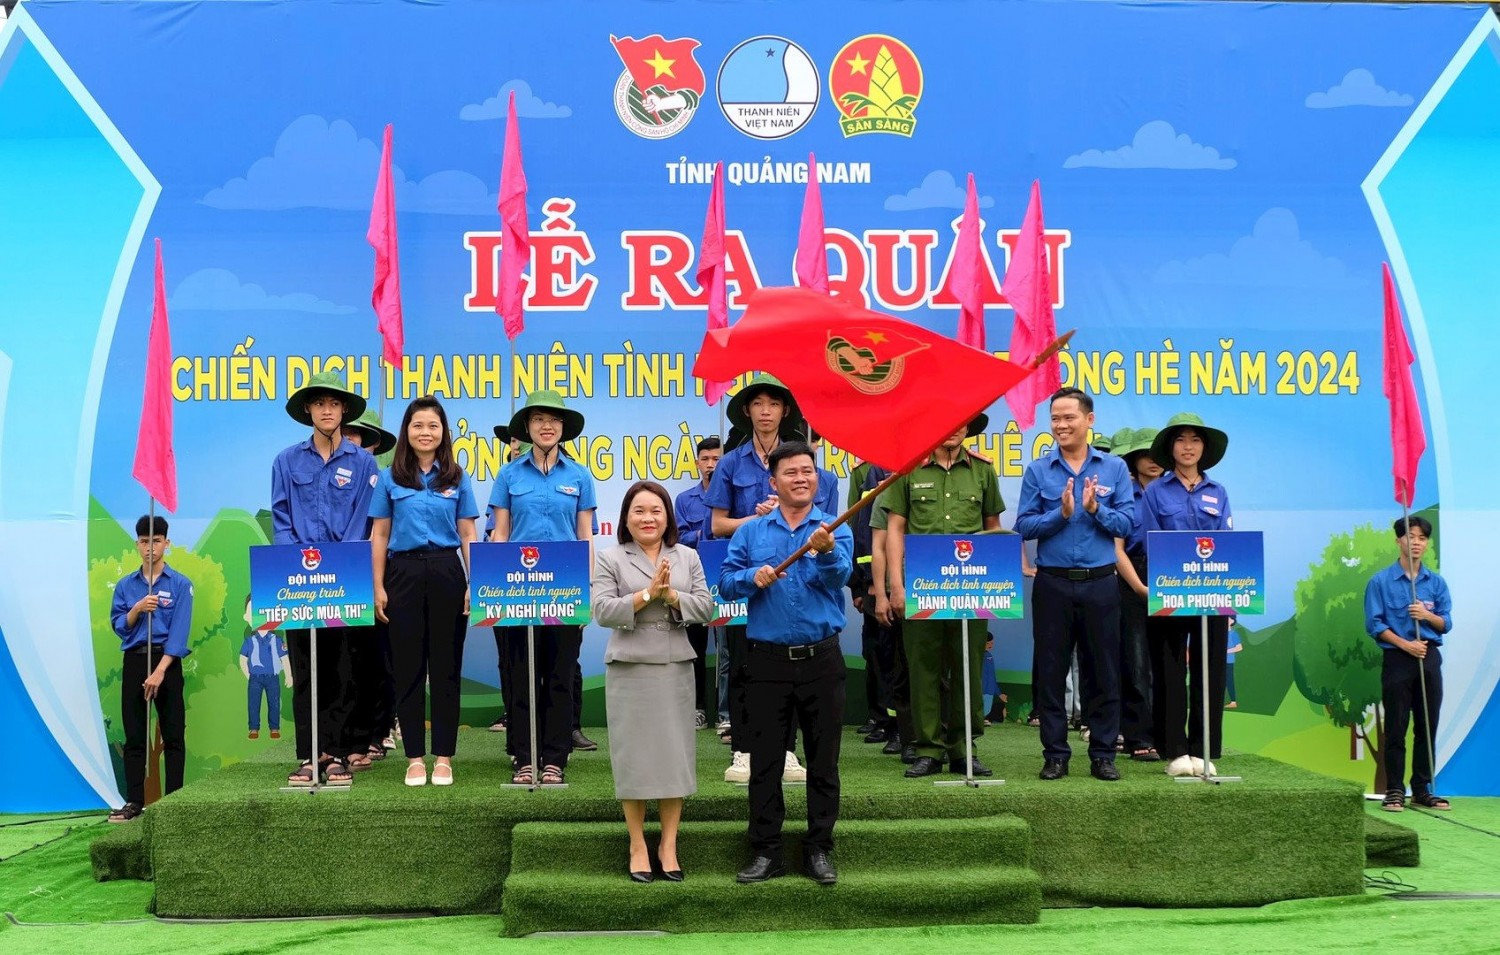 Trưởng ban Dân vận Tỉnh ủy Huỳnh Thị Thùy Dung trao cờ khởi động chiến dịch Thanh niên tình nguyện hè 2024. Ảnh: M.L